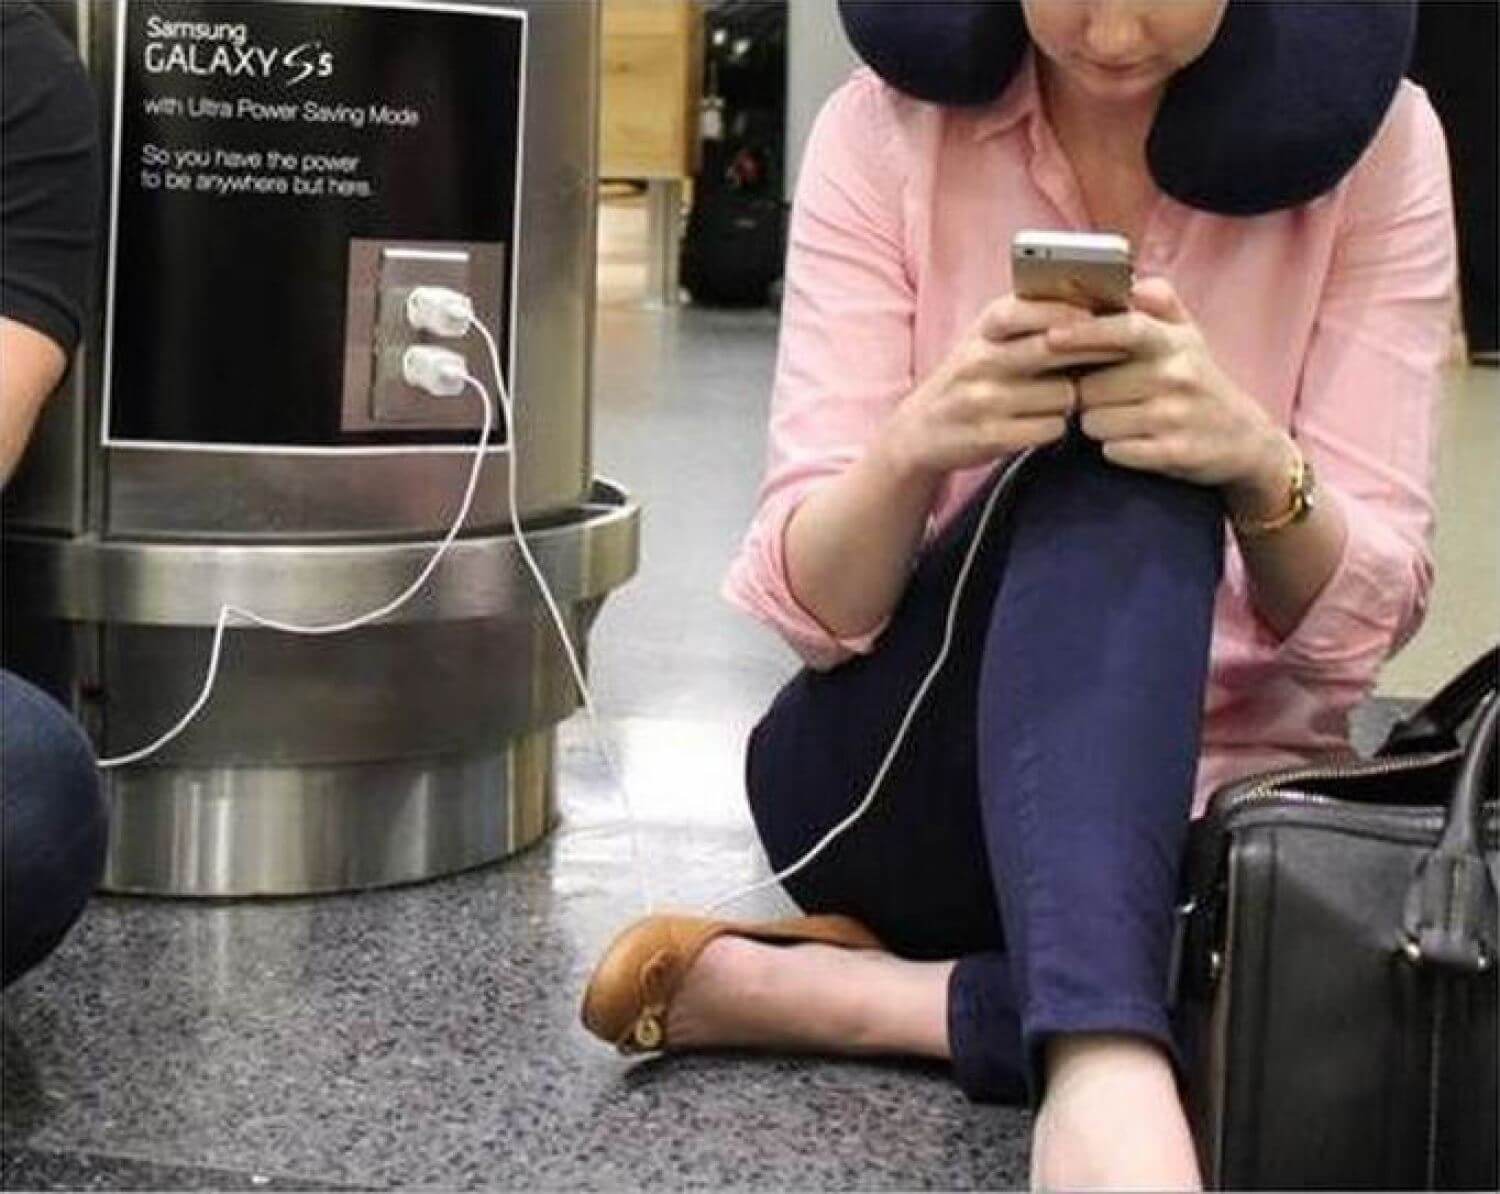 Реклама Galaxy S5 в аэропорту